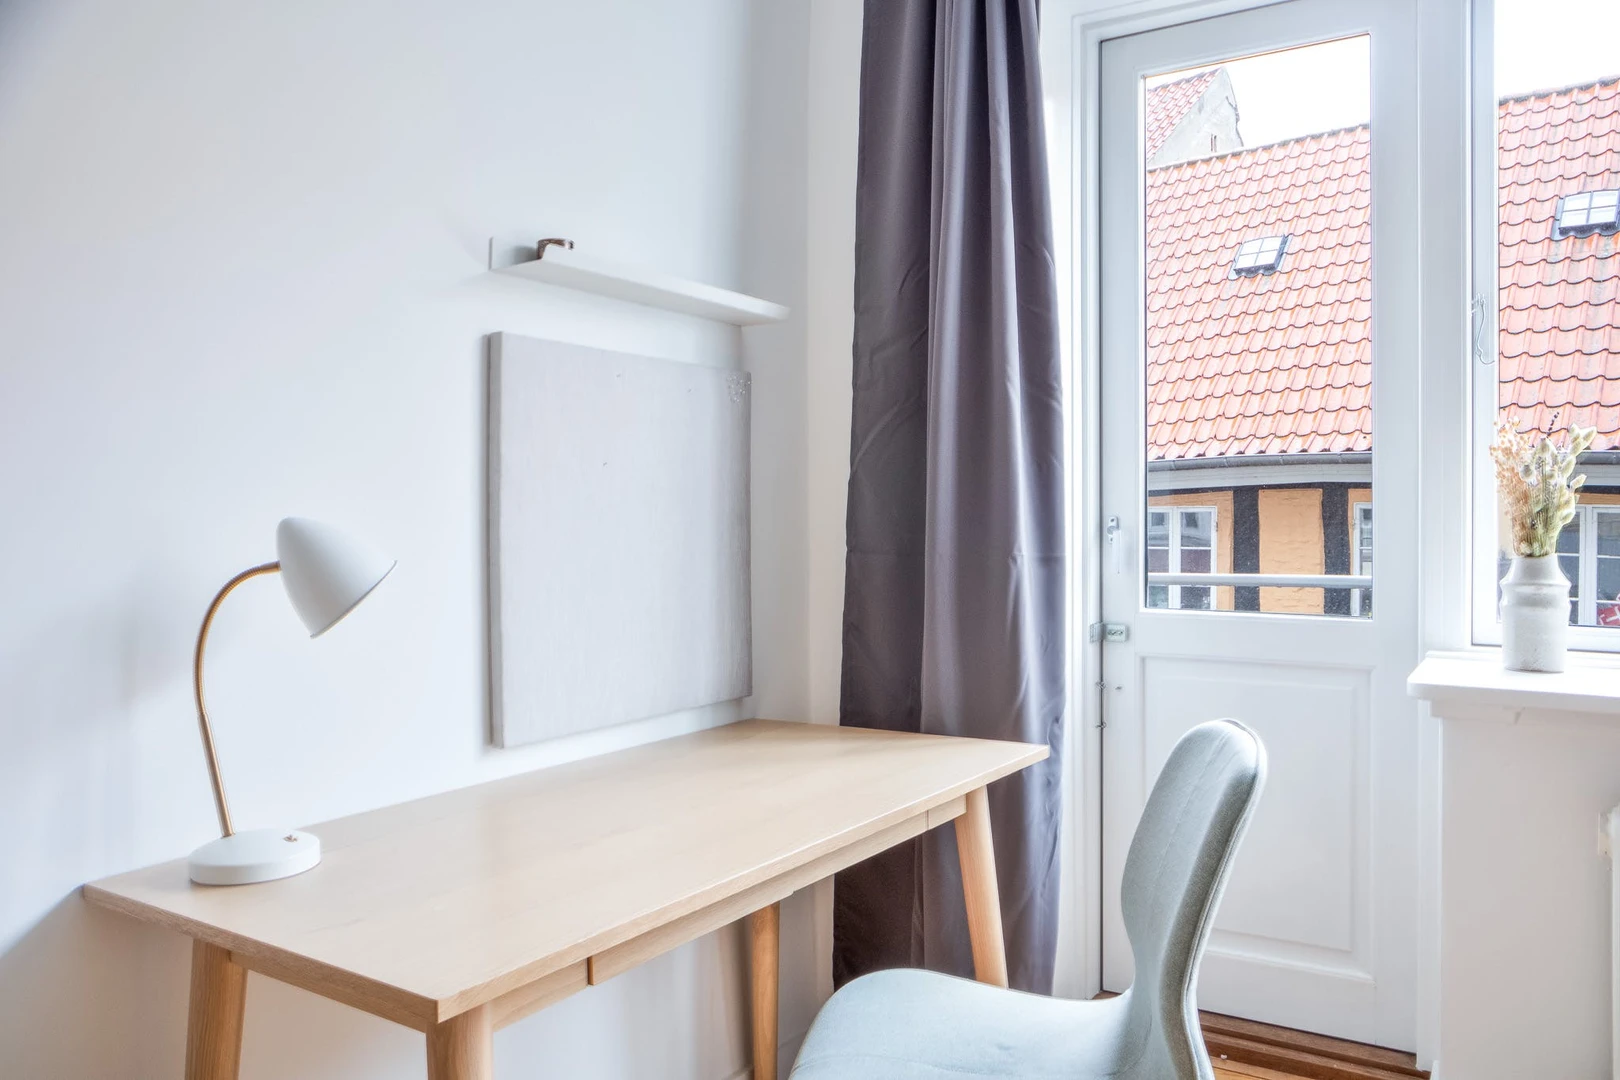 Alquiler de habitación en piso compartido en Aarhus